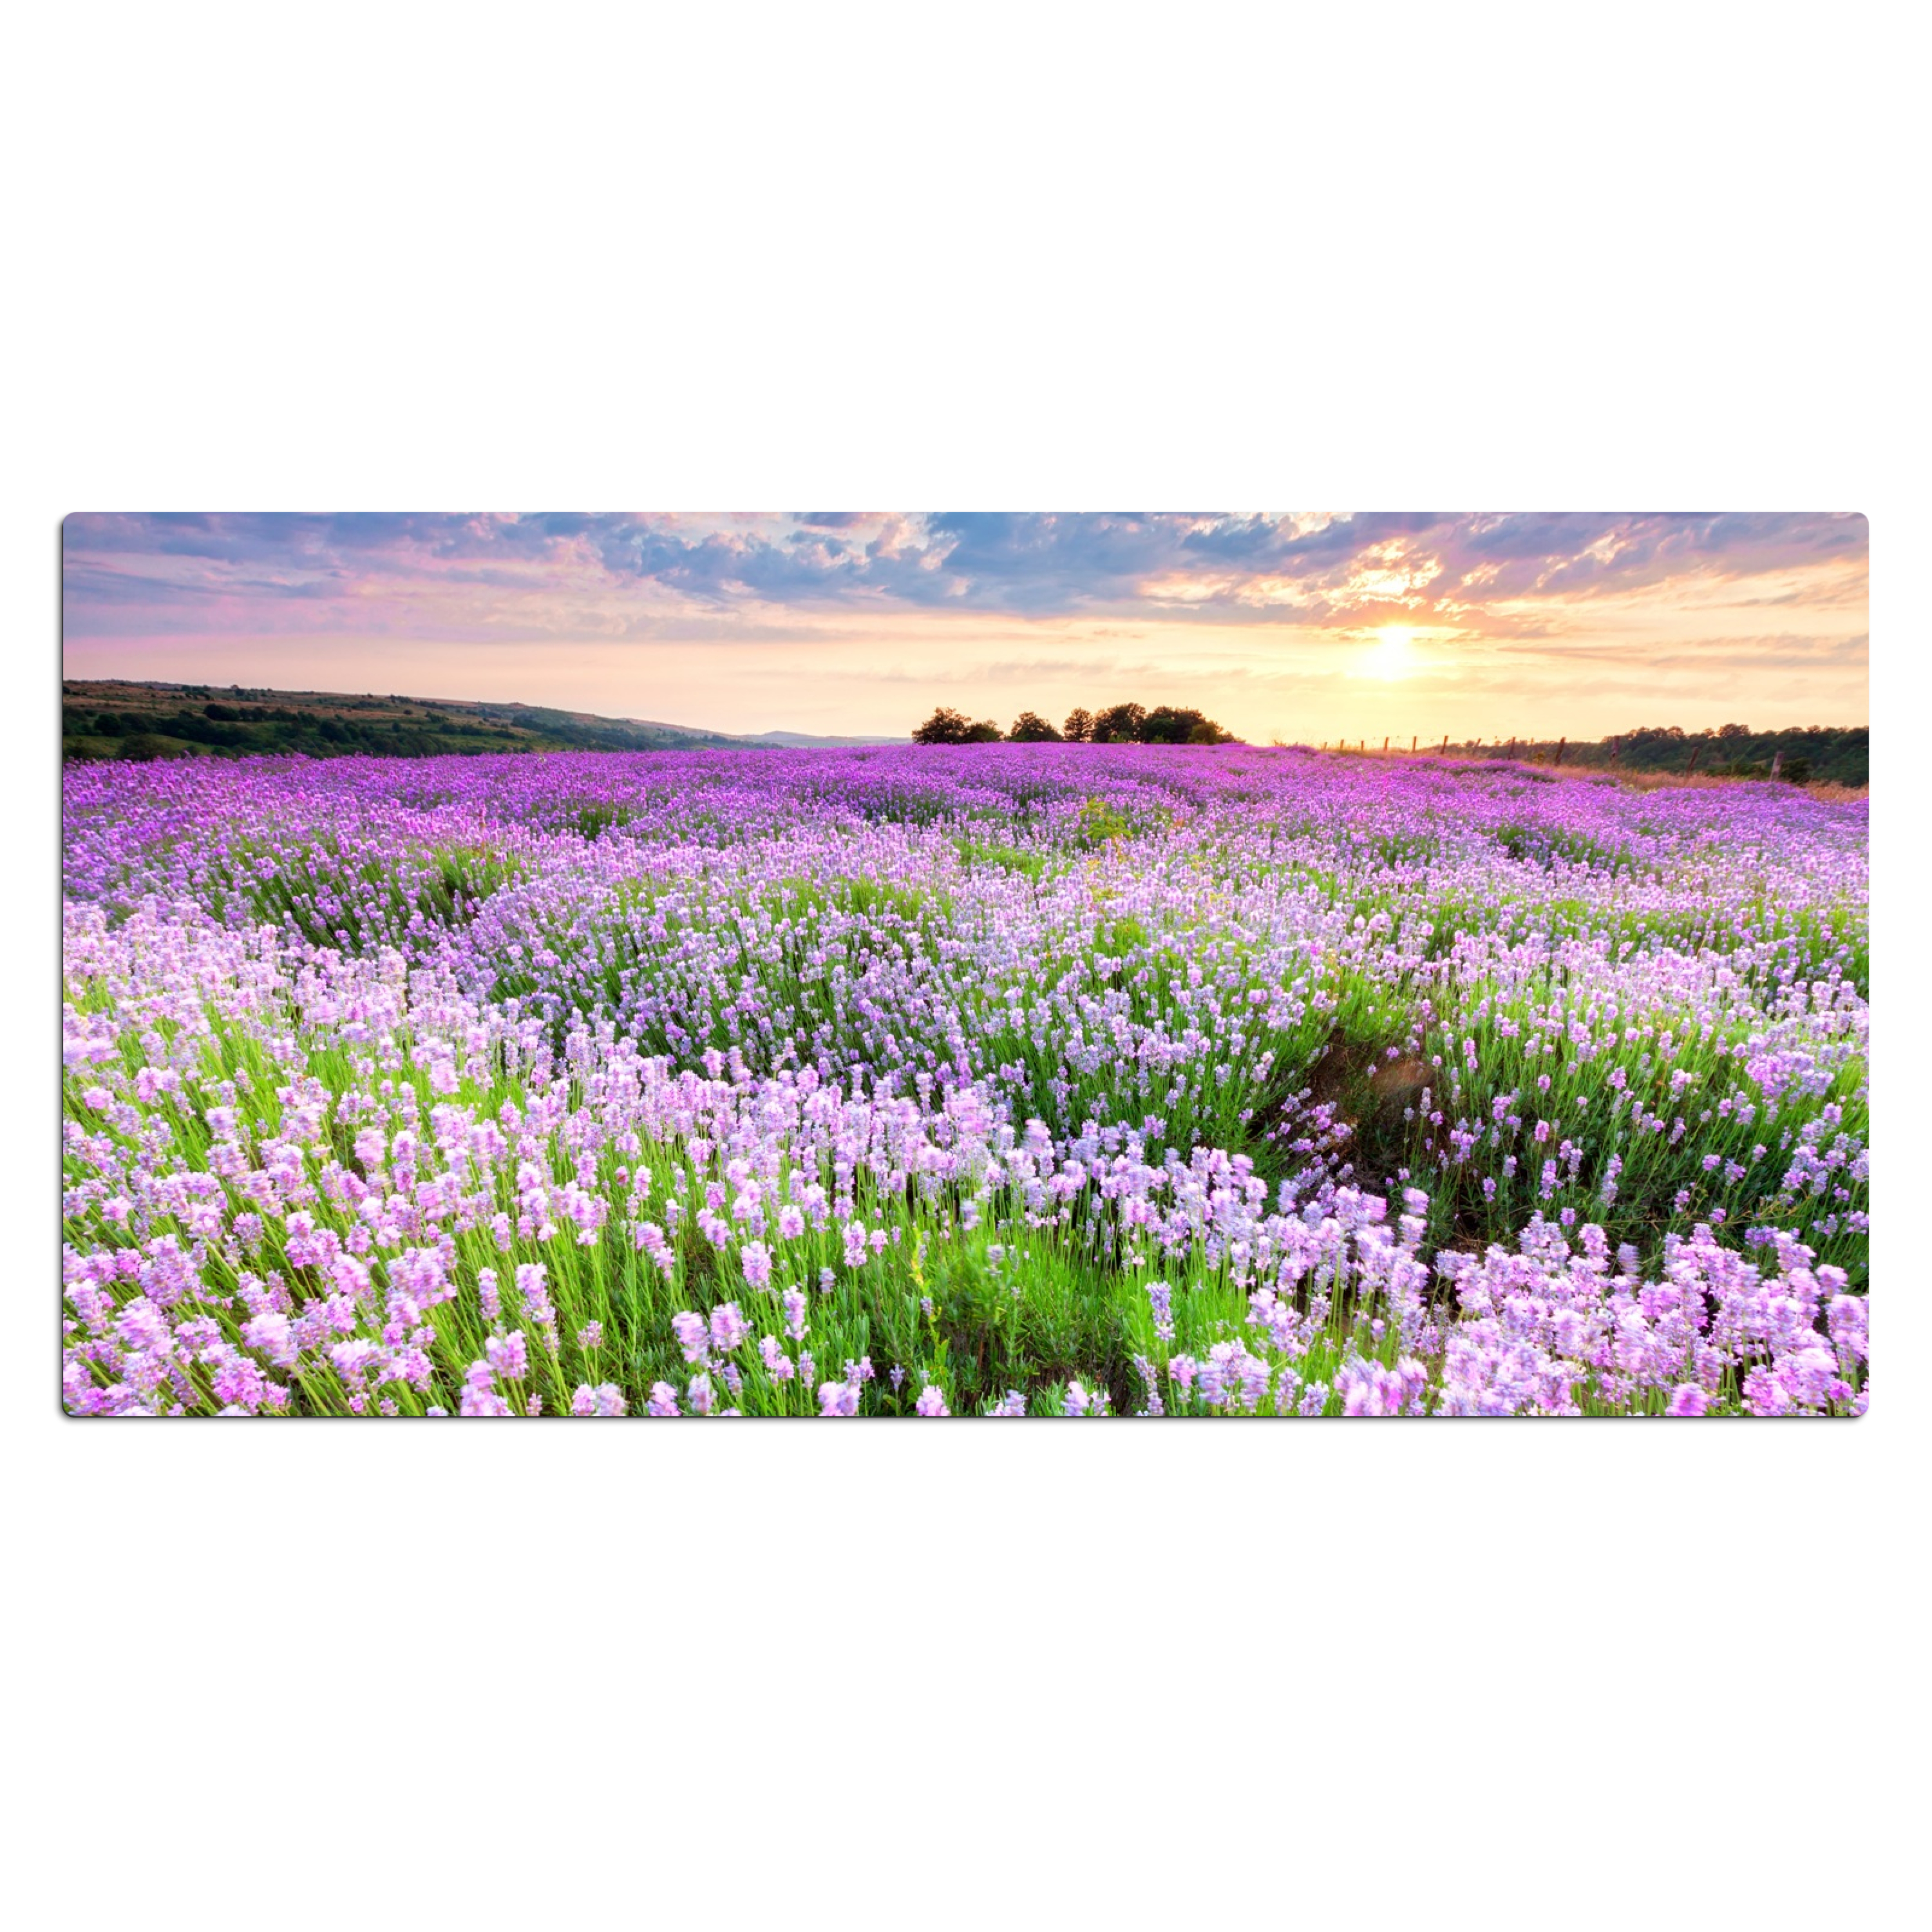 Sous main bureau - Fleurs - Lavande - Violet - Ciel - Coucher de soleil - Prairie - Nature